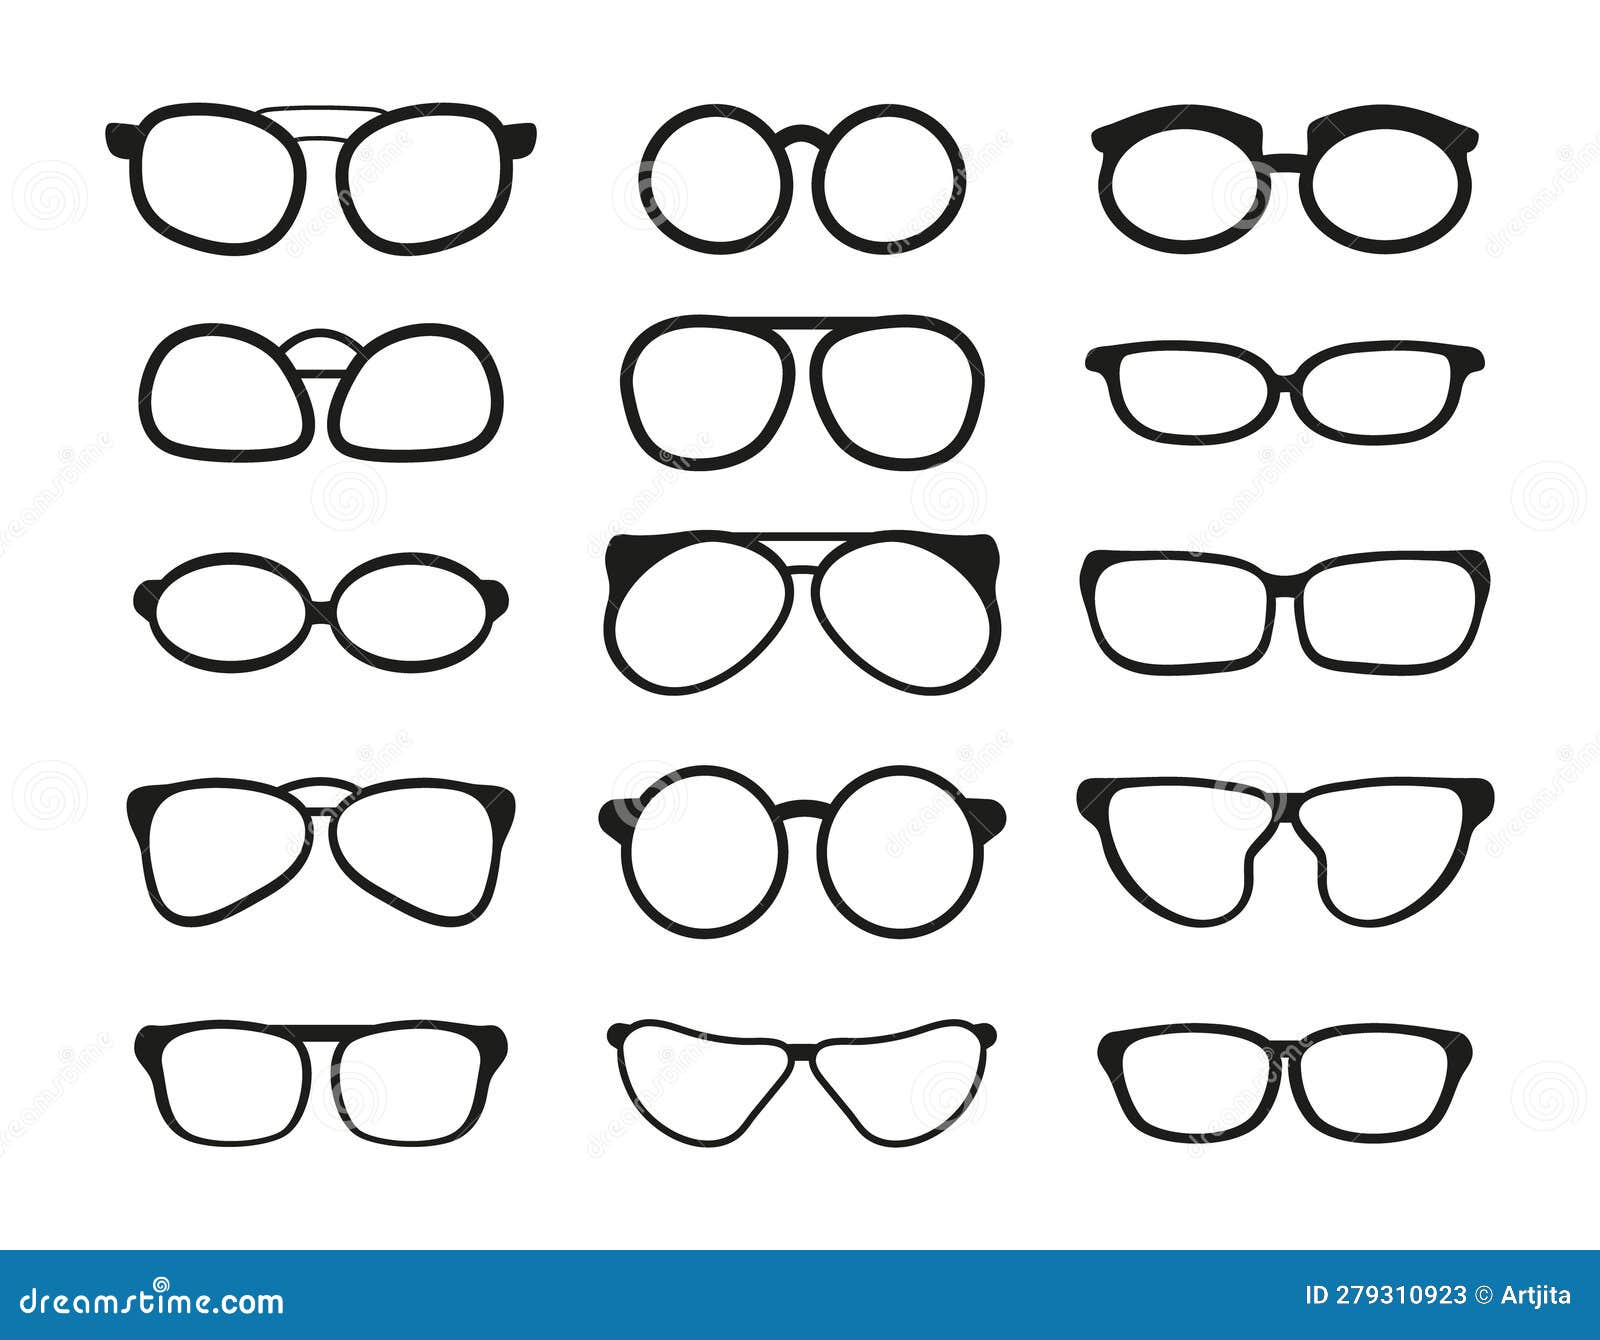 Glasses Silhouette Vector. Frame for Sunglasses Stock Vector ...